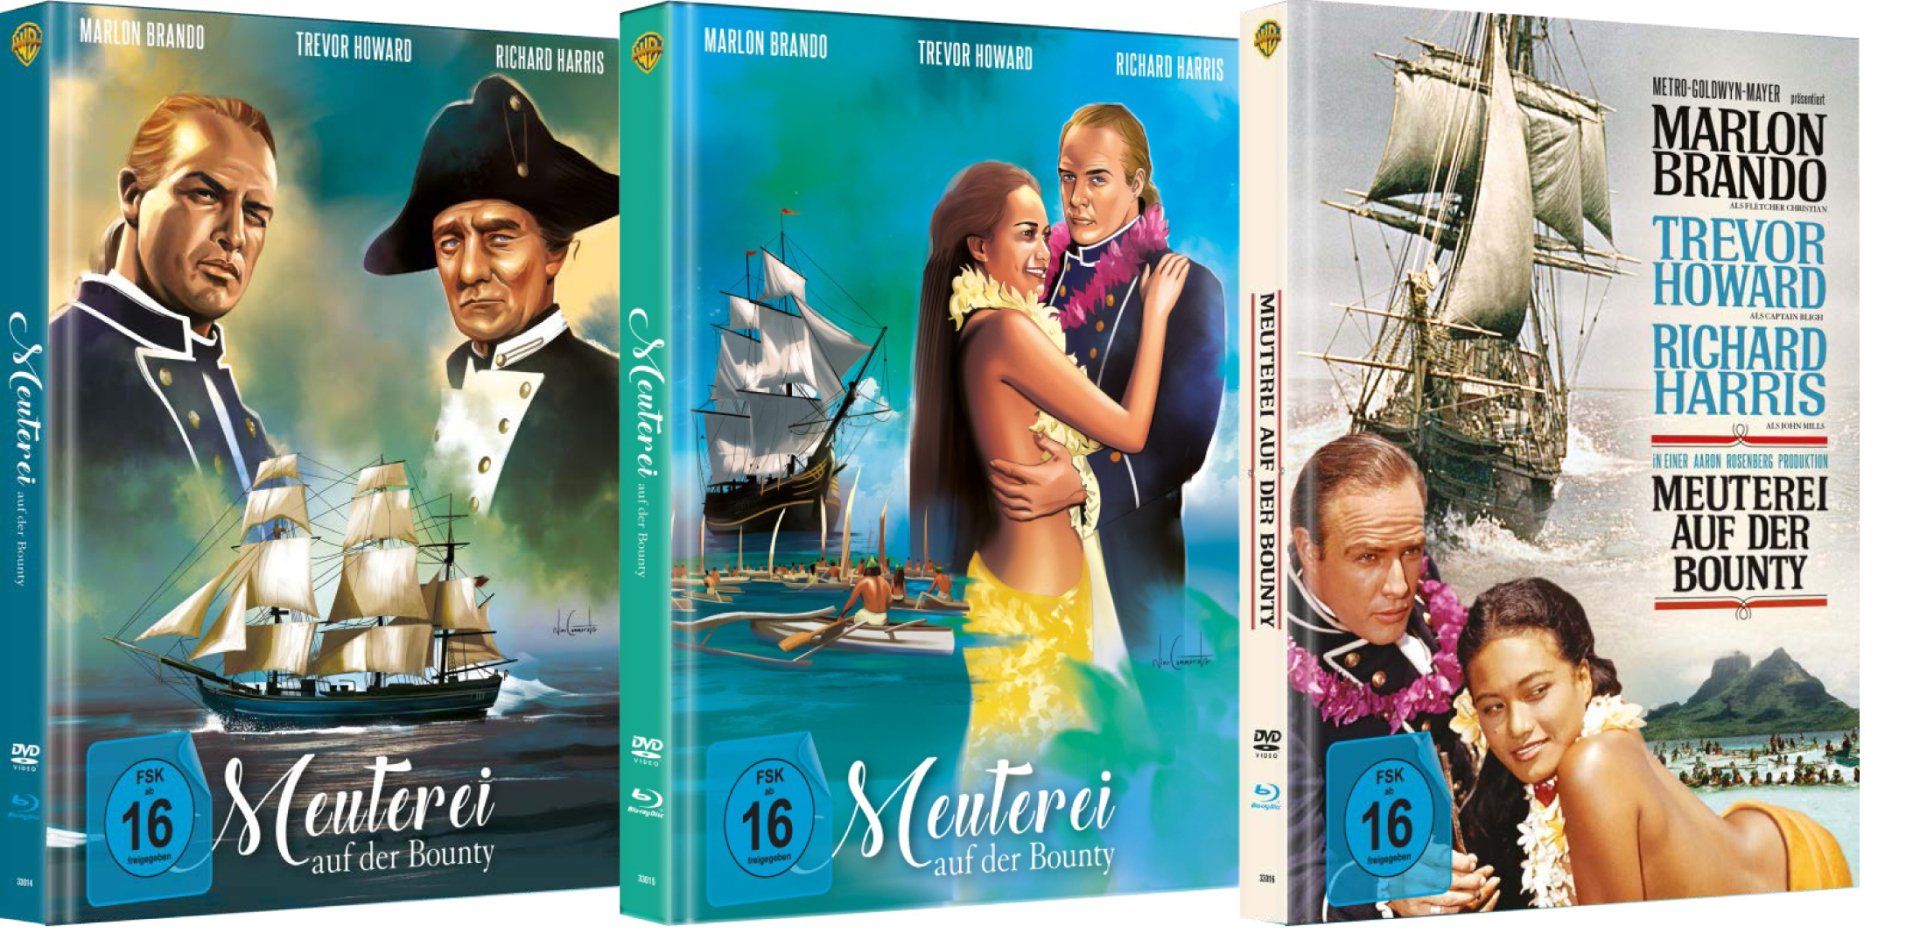 MediaBook Meuterei auf der Bounty - DVD & Blu ray